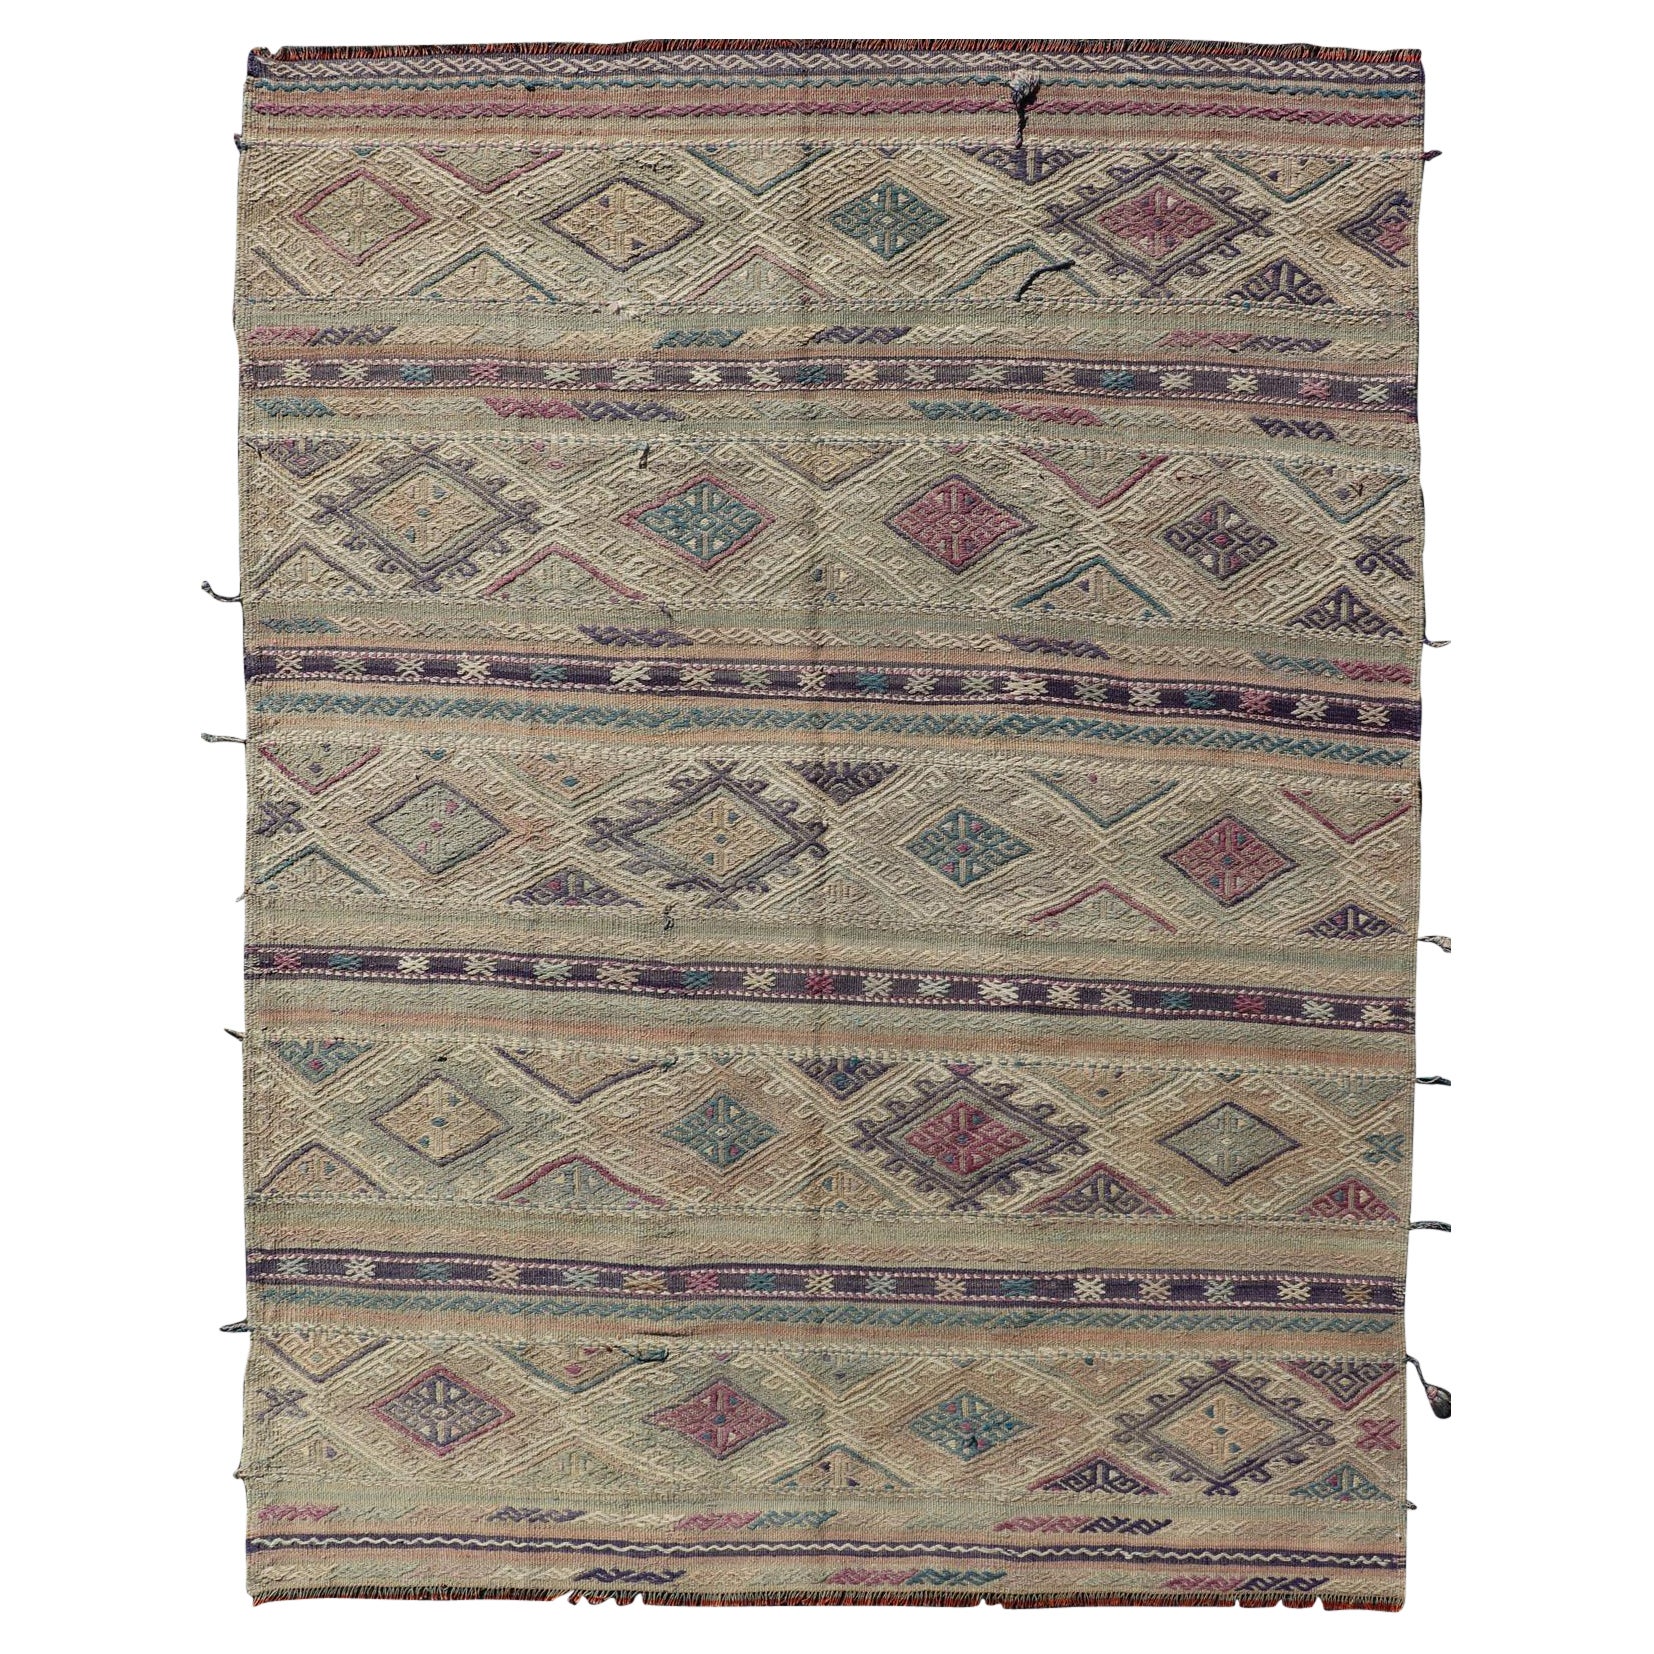 Tapis Kilim turc à tissage plat avec rayures géométriques et colorées